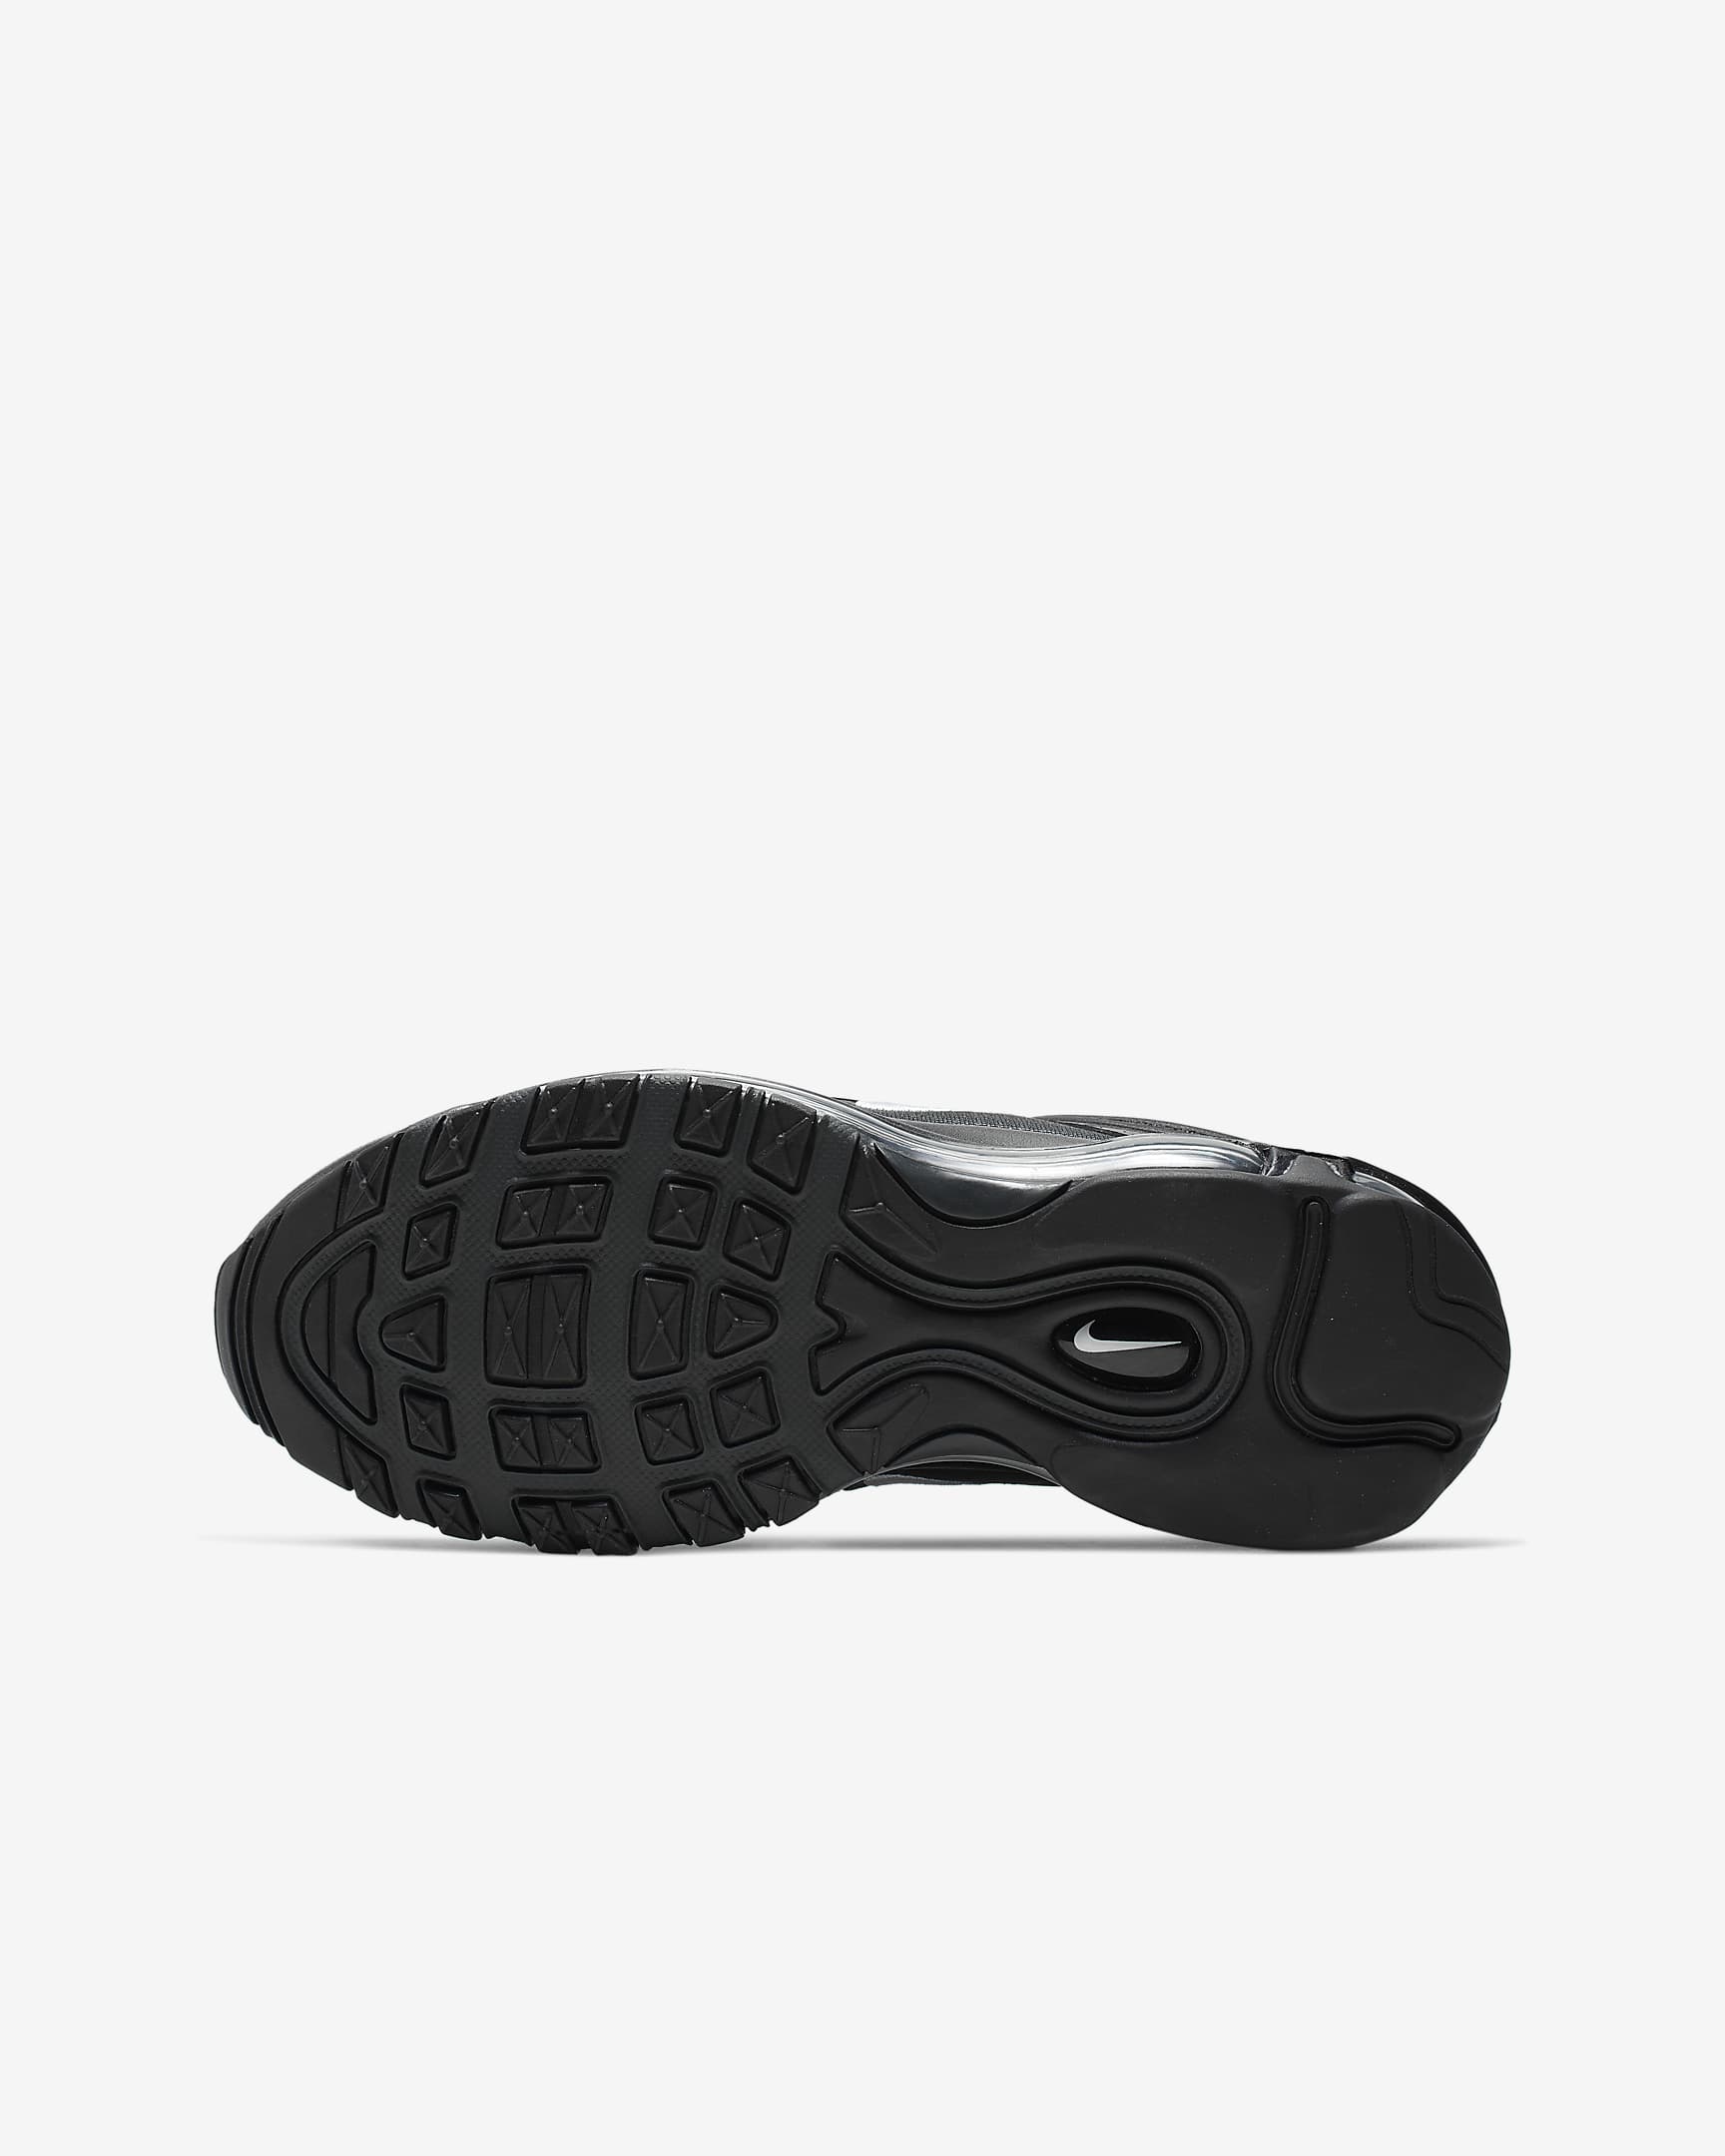 Chaussure Nike Air Max 97 pour ado - Noir/Anthracite/Blanc